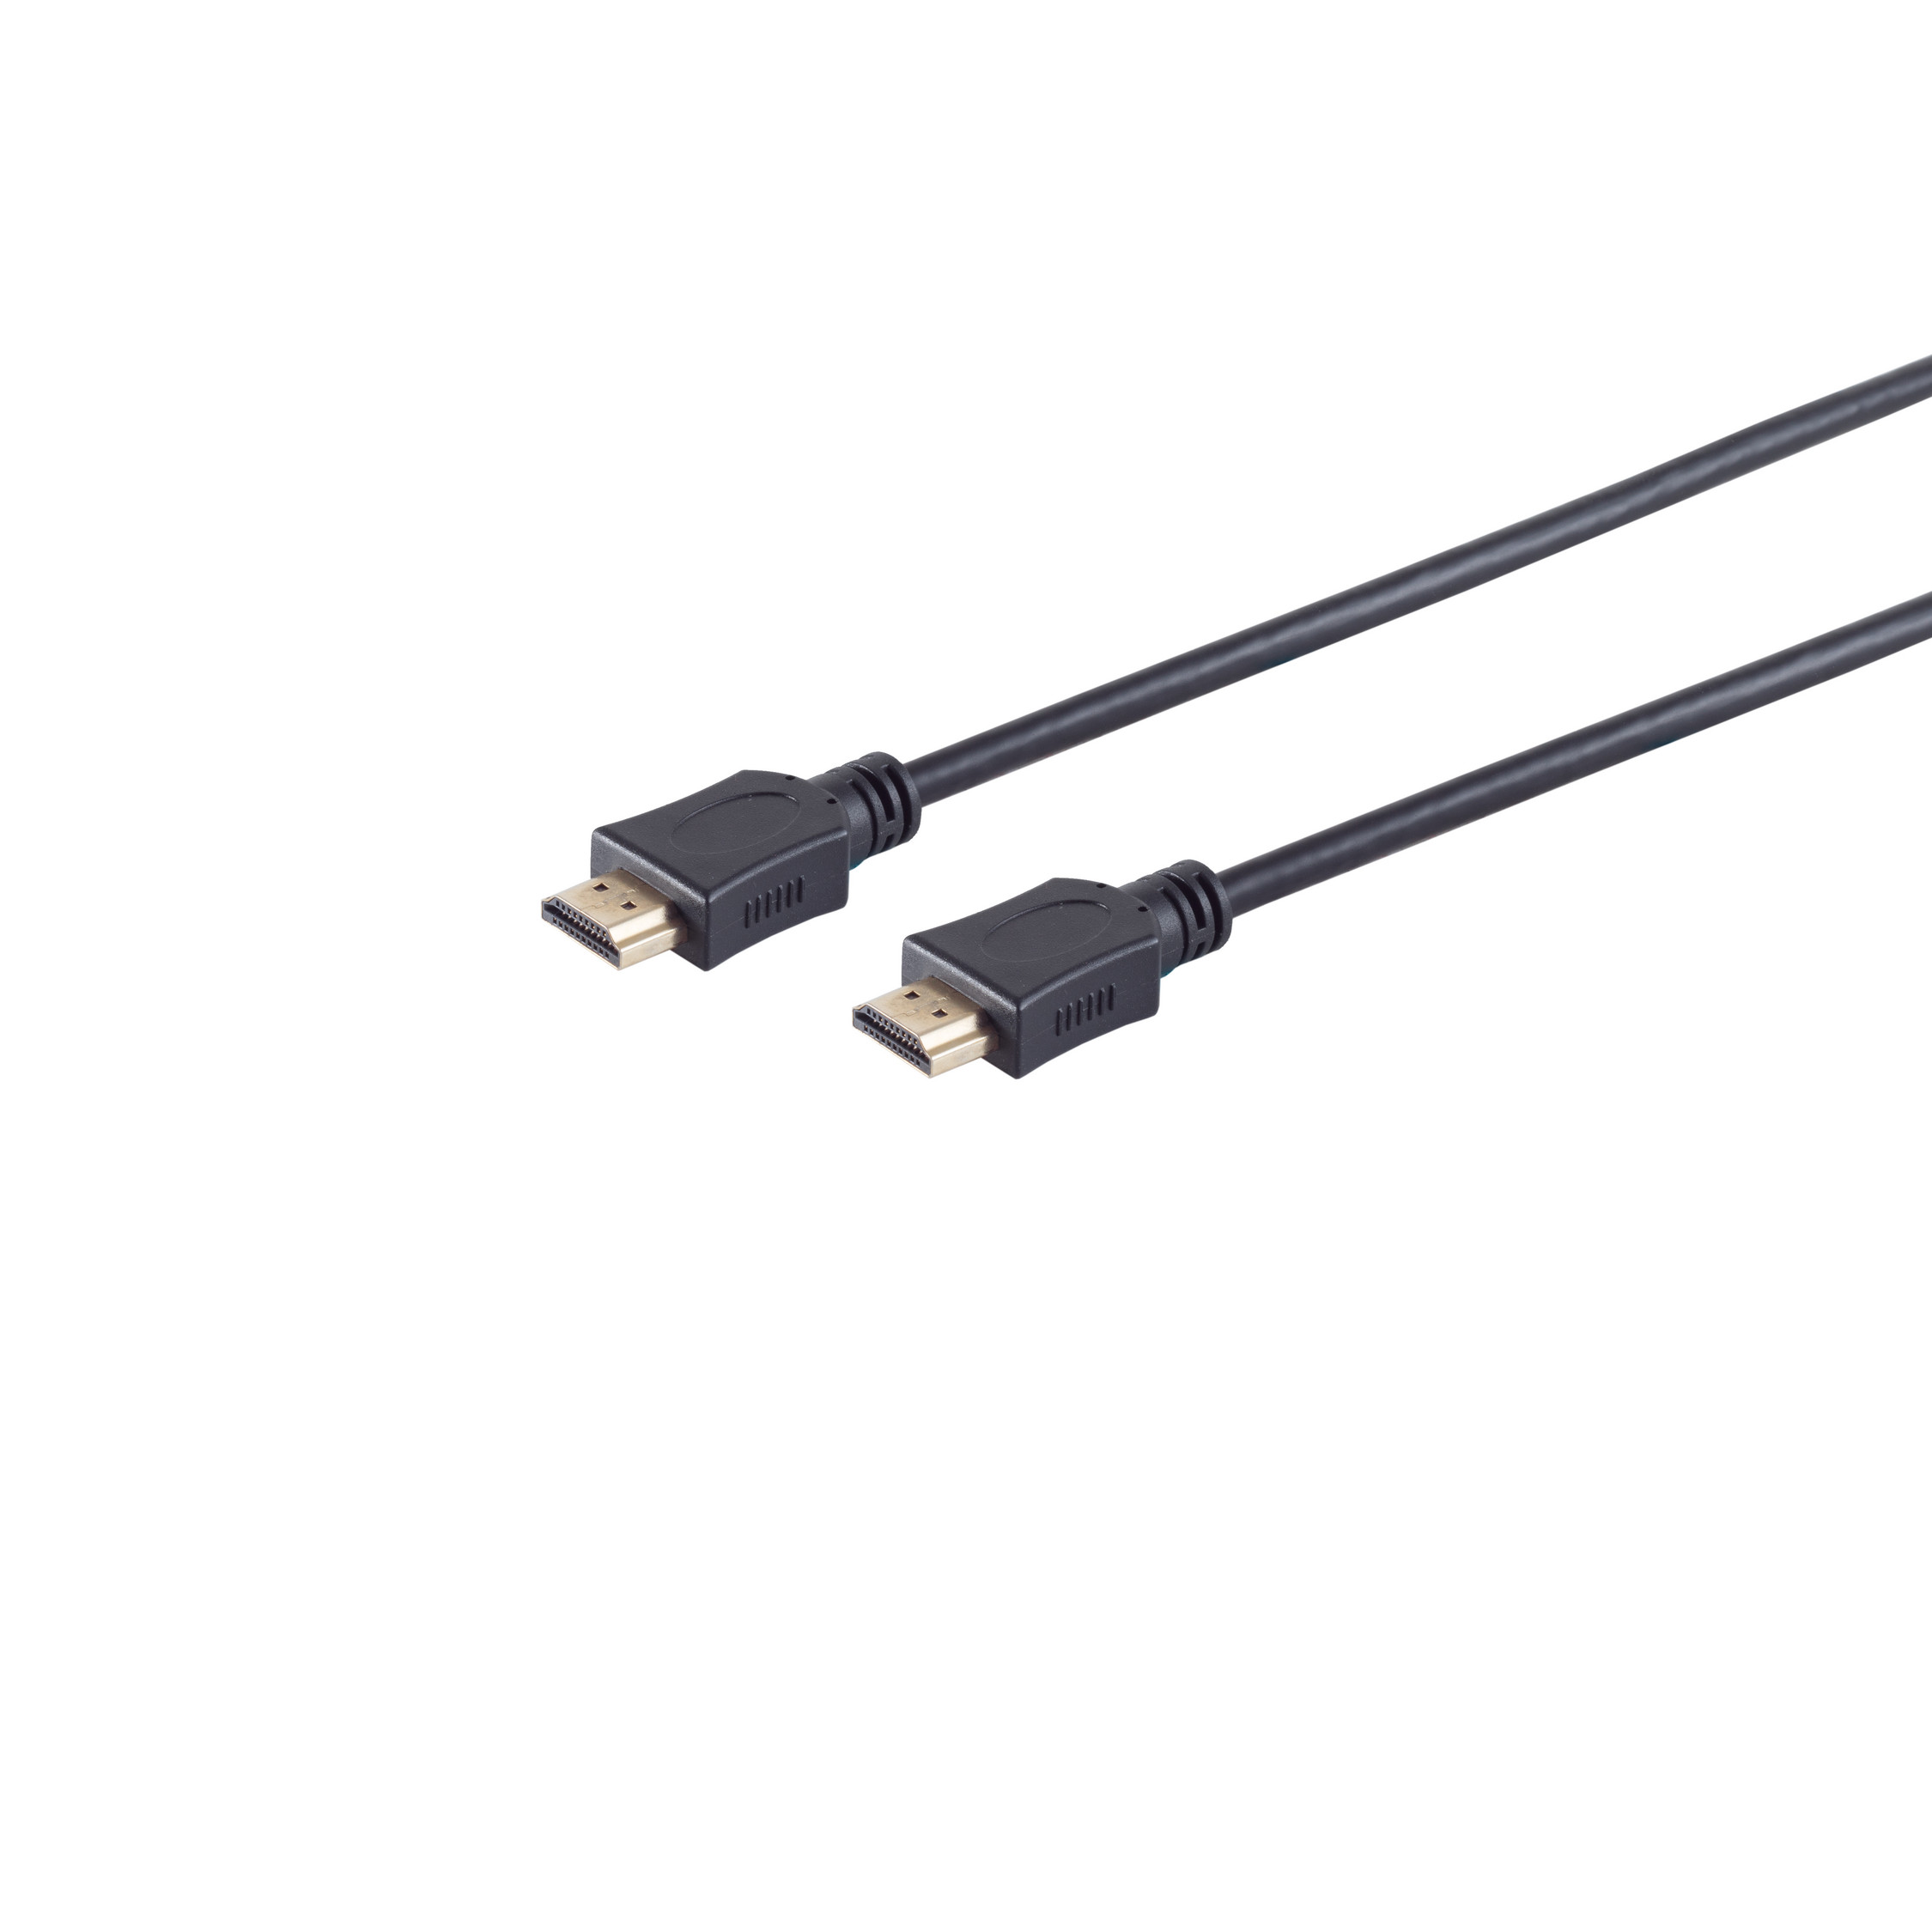 MAXIMUM HDMI 10m A-Stecker CONNECTIVITY OD6mm HDMI verg, auf Kabel A-Stecker S/CONN HDMI